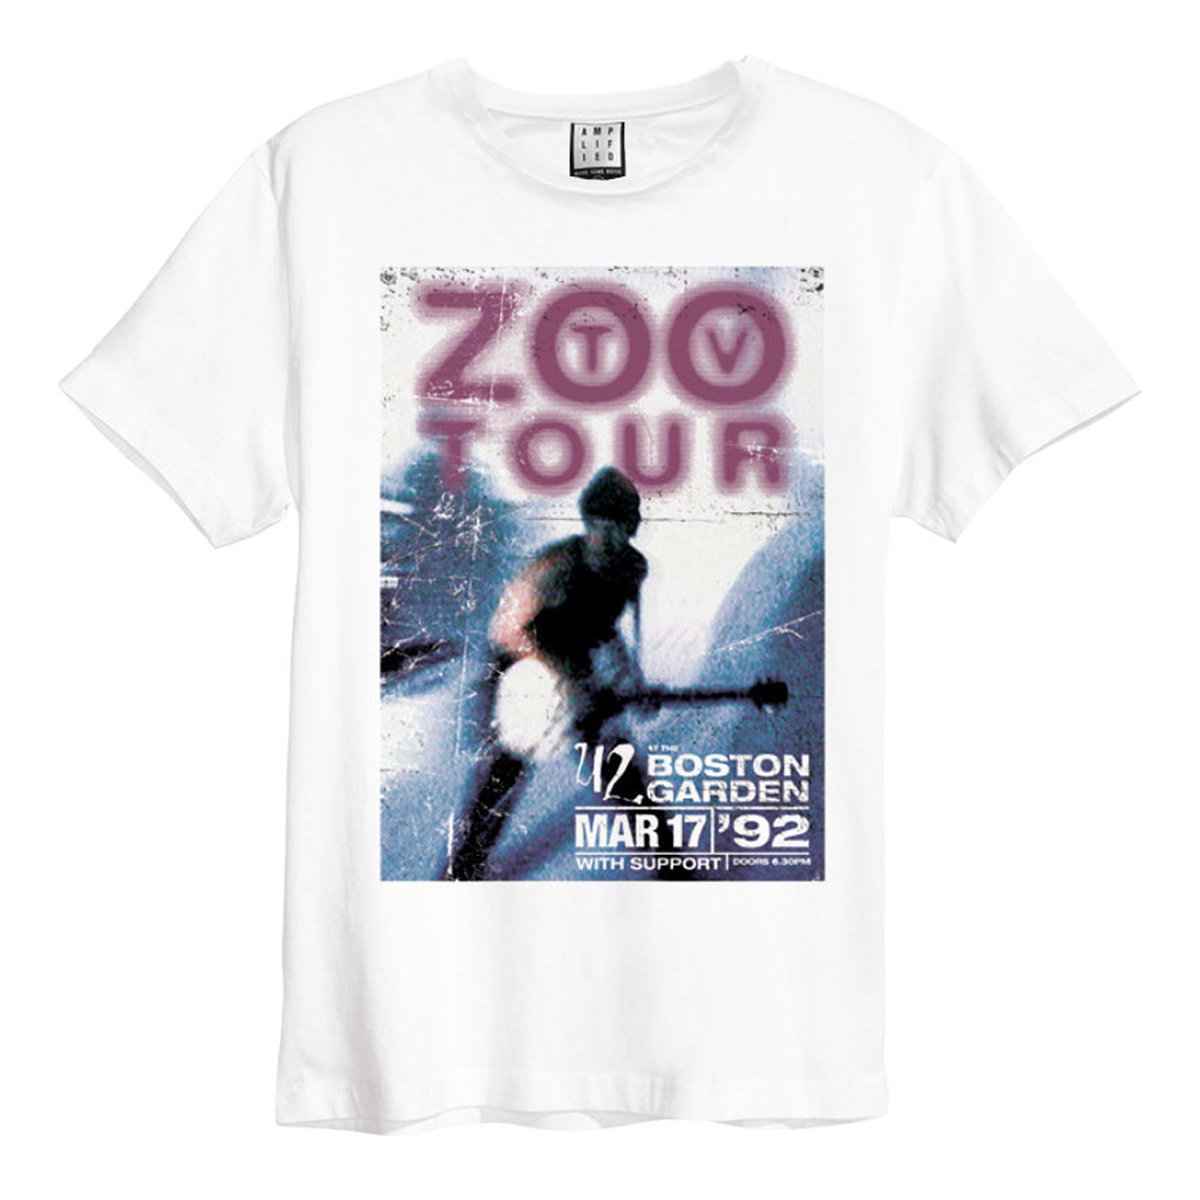 U2 - Zoo TV Tour